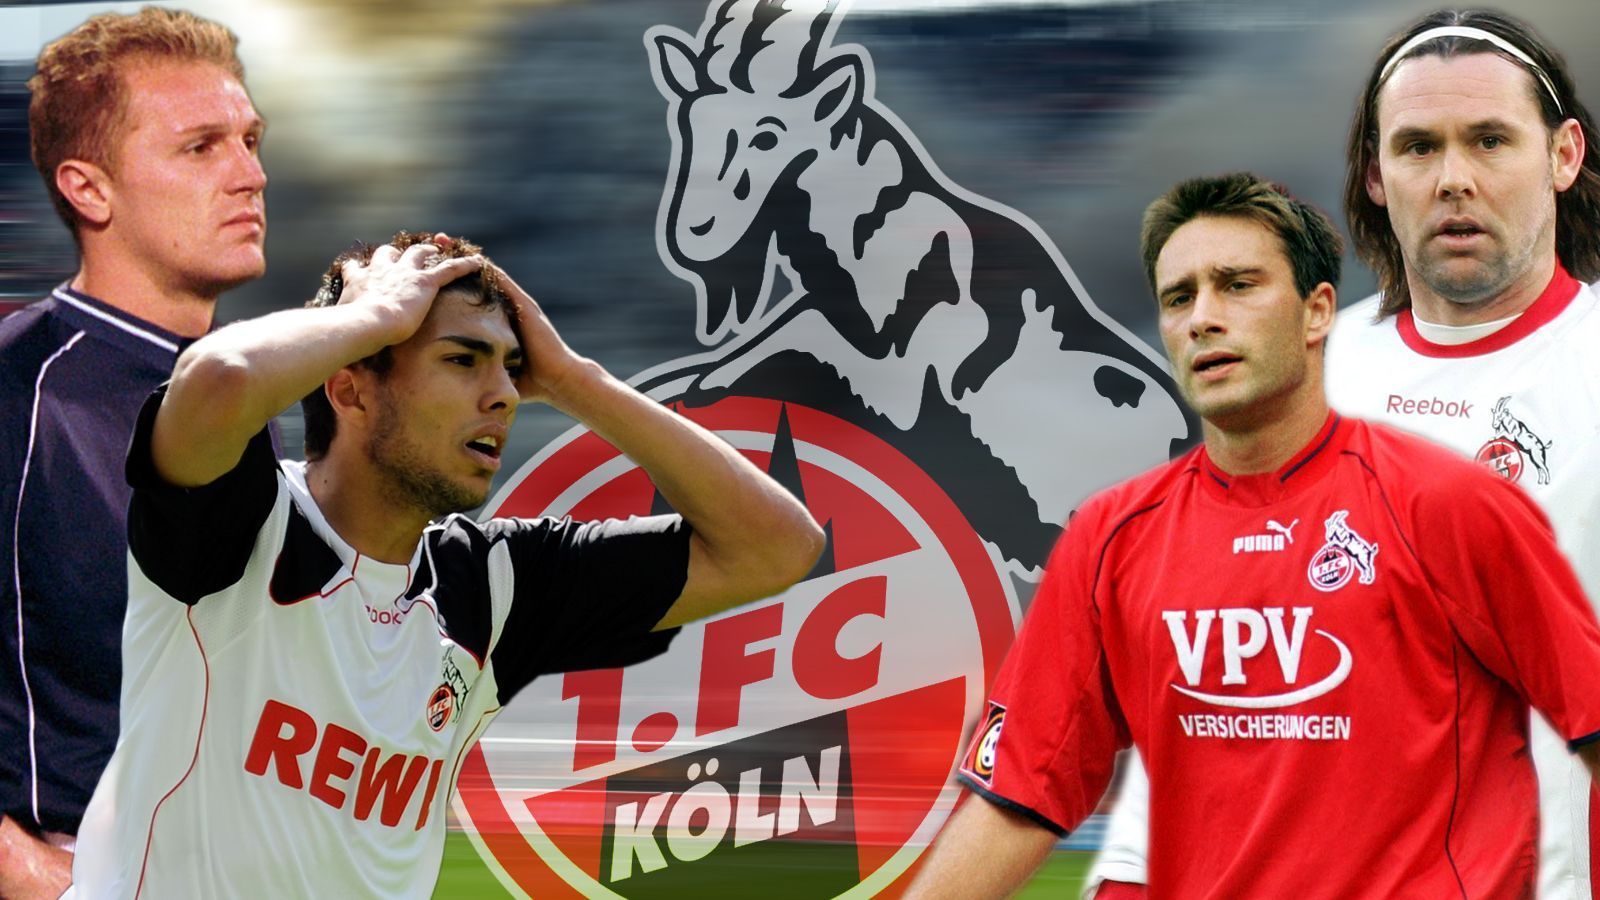 
                <strong>Die Flop-Elf des 1. FC Köln seit dem Jahr 2000 </strong><br>
                Der 1. FC Köln ist seit 2000 fünf Mal abgestiegen - es ist also einiges falsch gemacht worden. So war es auch ein Leichtes, eine Flop-Elf des ersten Bundesliga-Meisters zusammenzustellen. Augen zu und durch, liebe FC-Fans!
              